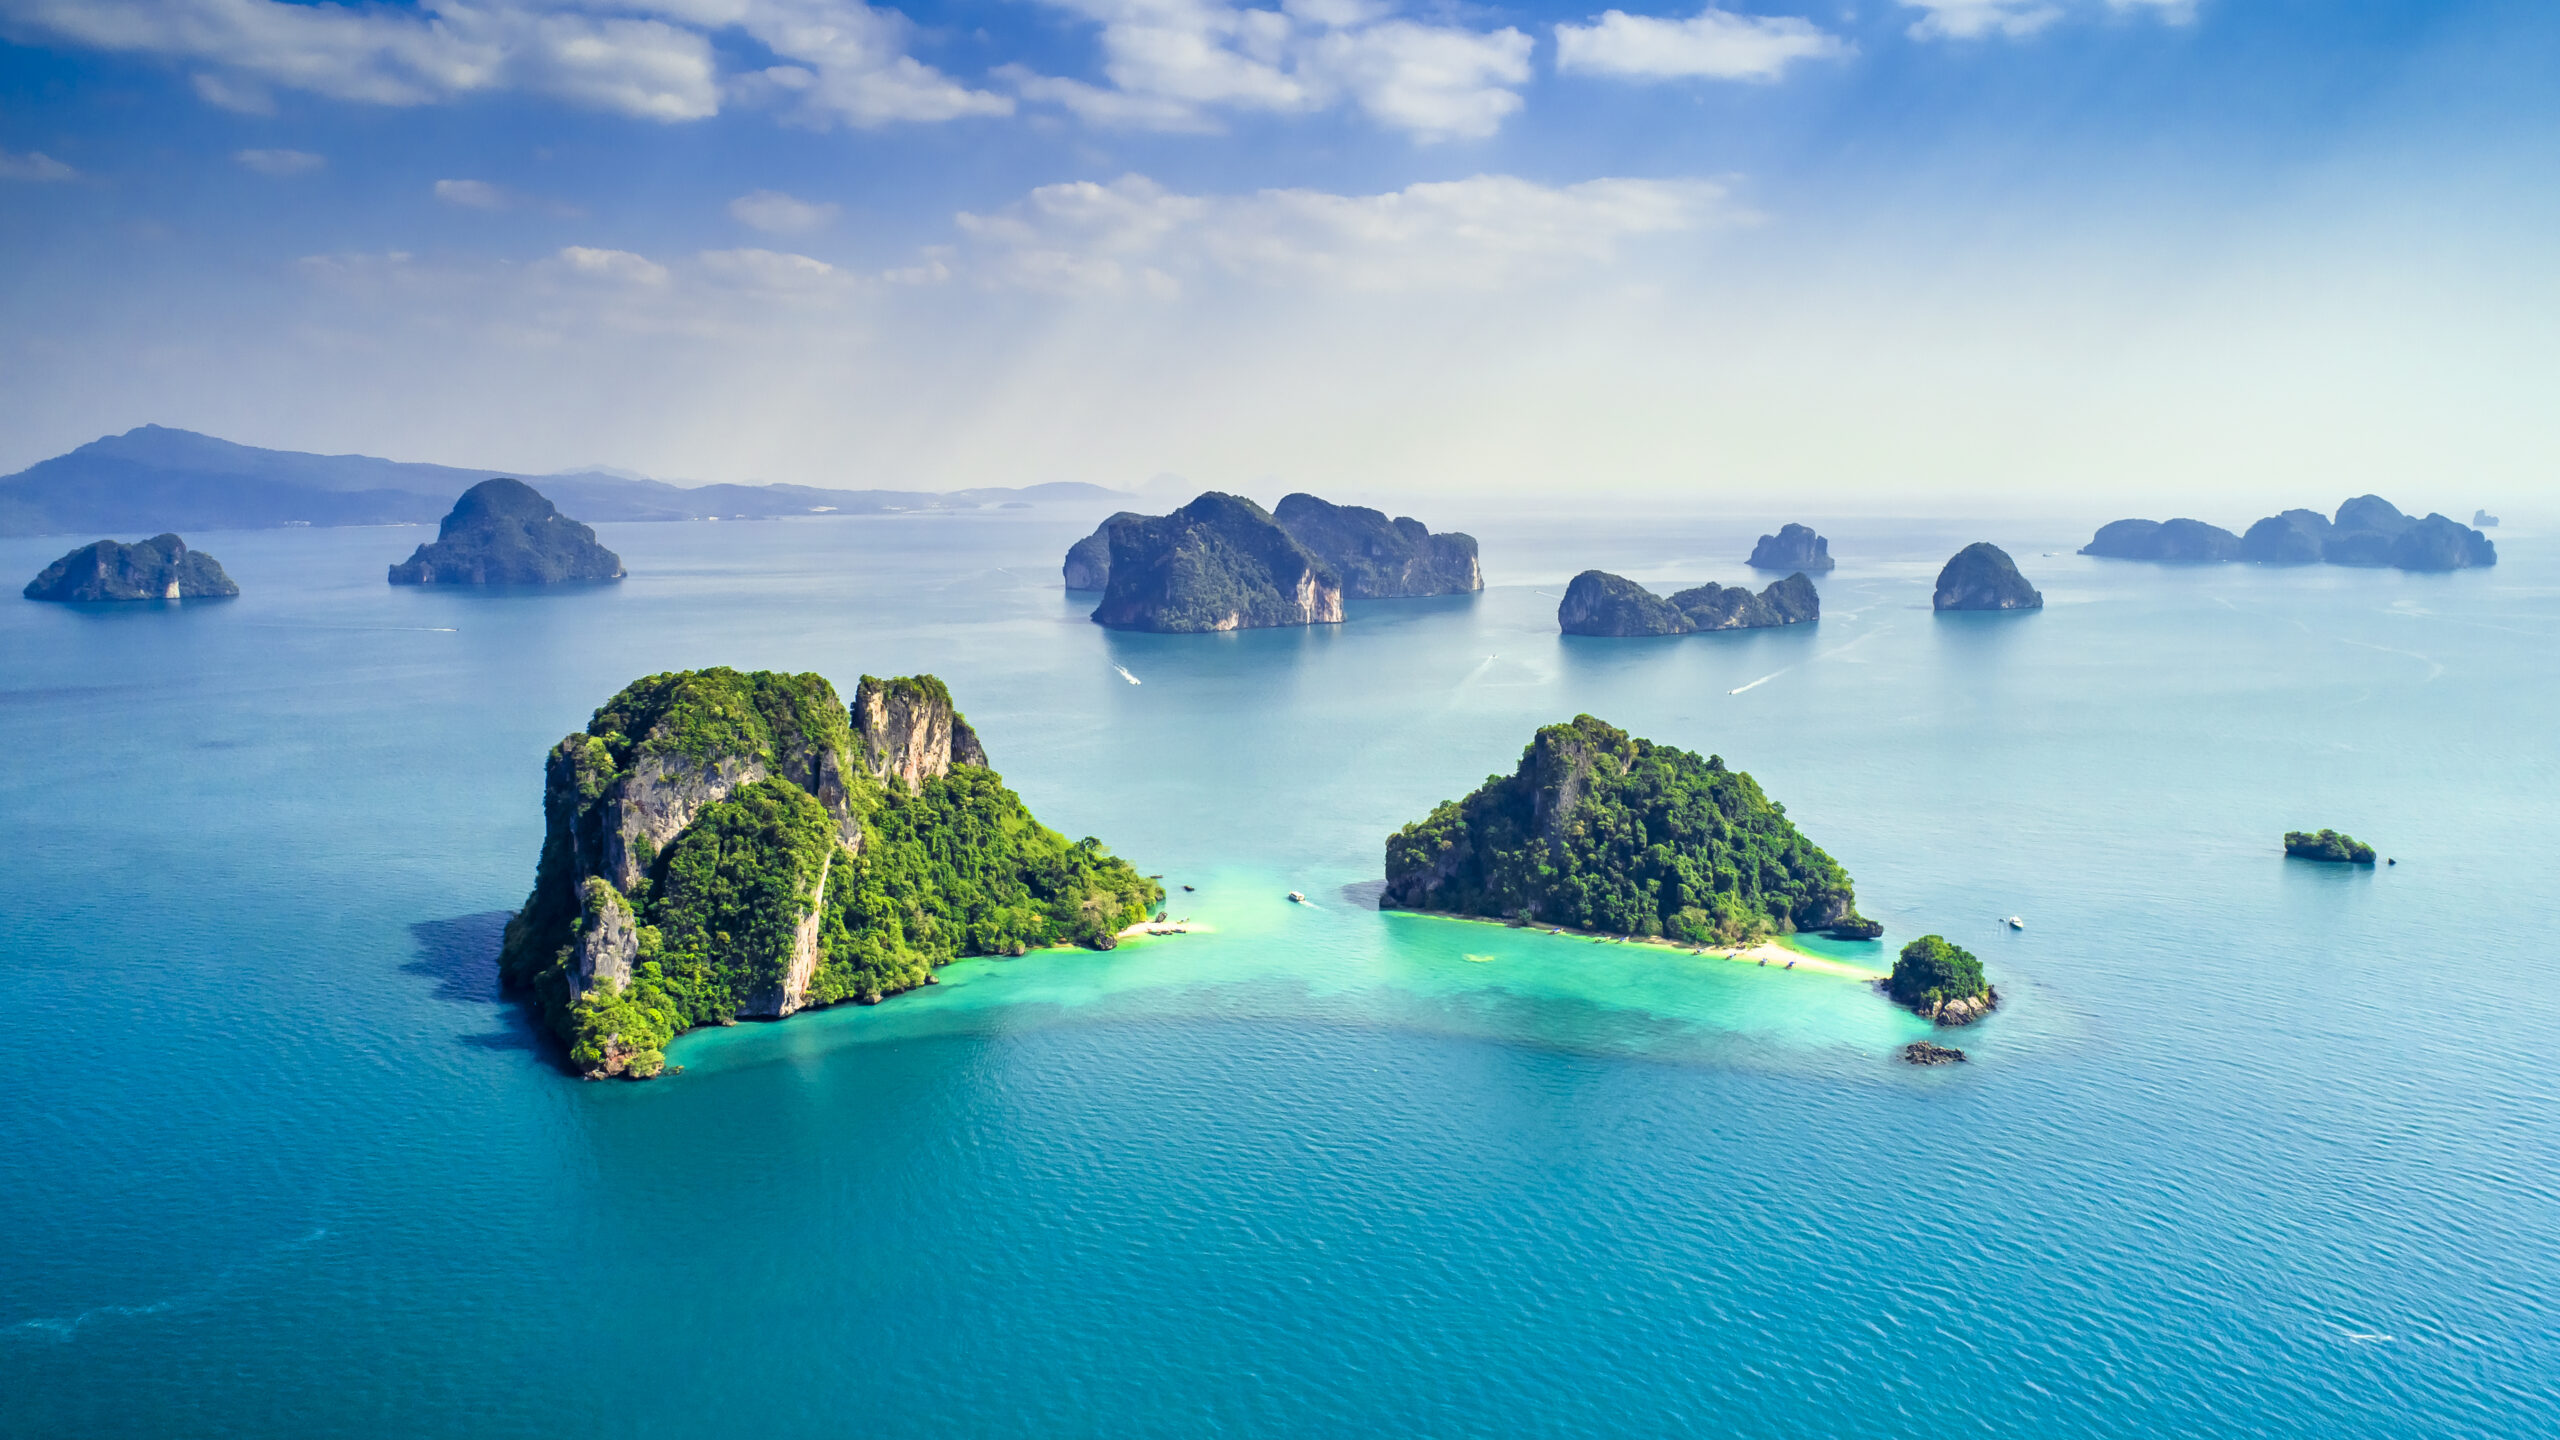 Thailand islands